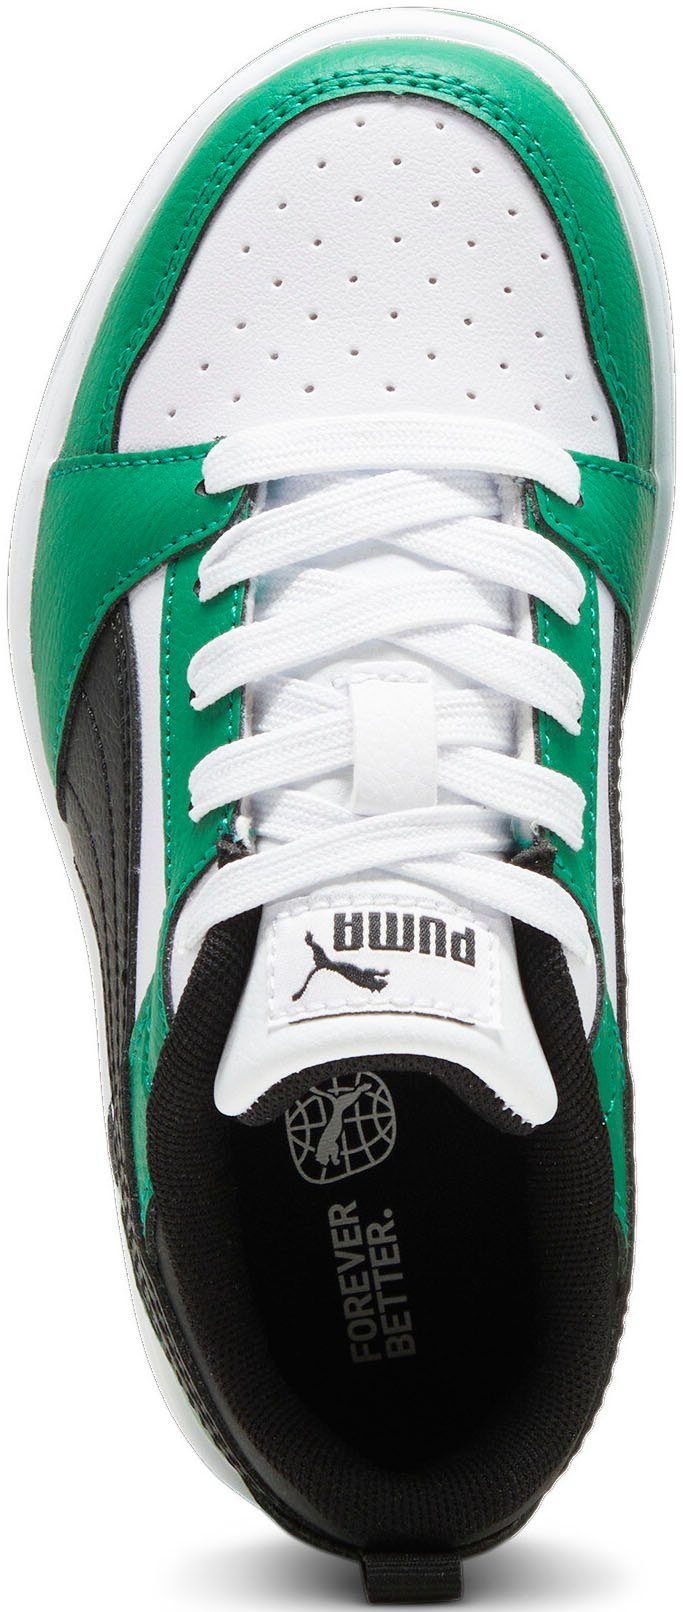 White-PUMA Black-Archive REBOUND Sneaker Green PS PUMA V6 LO PUMA